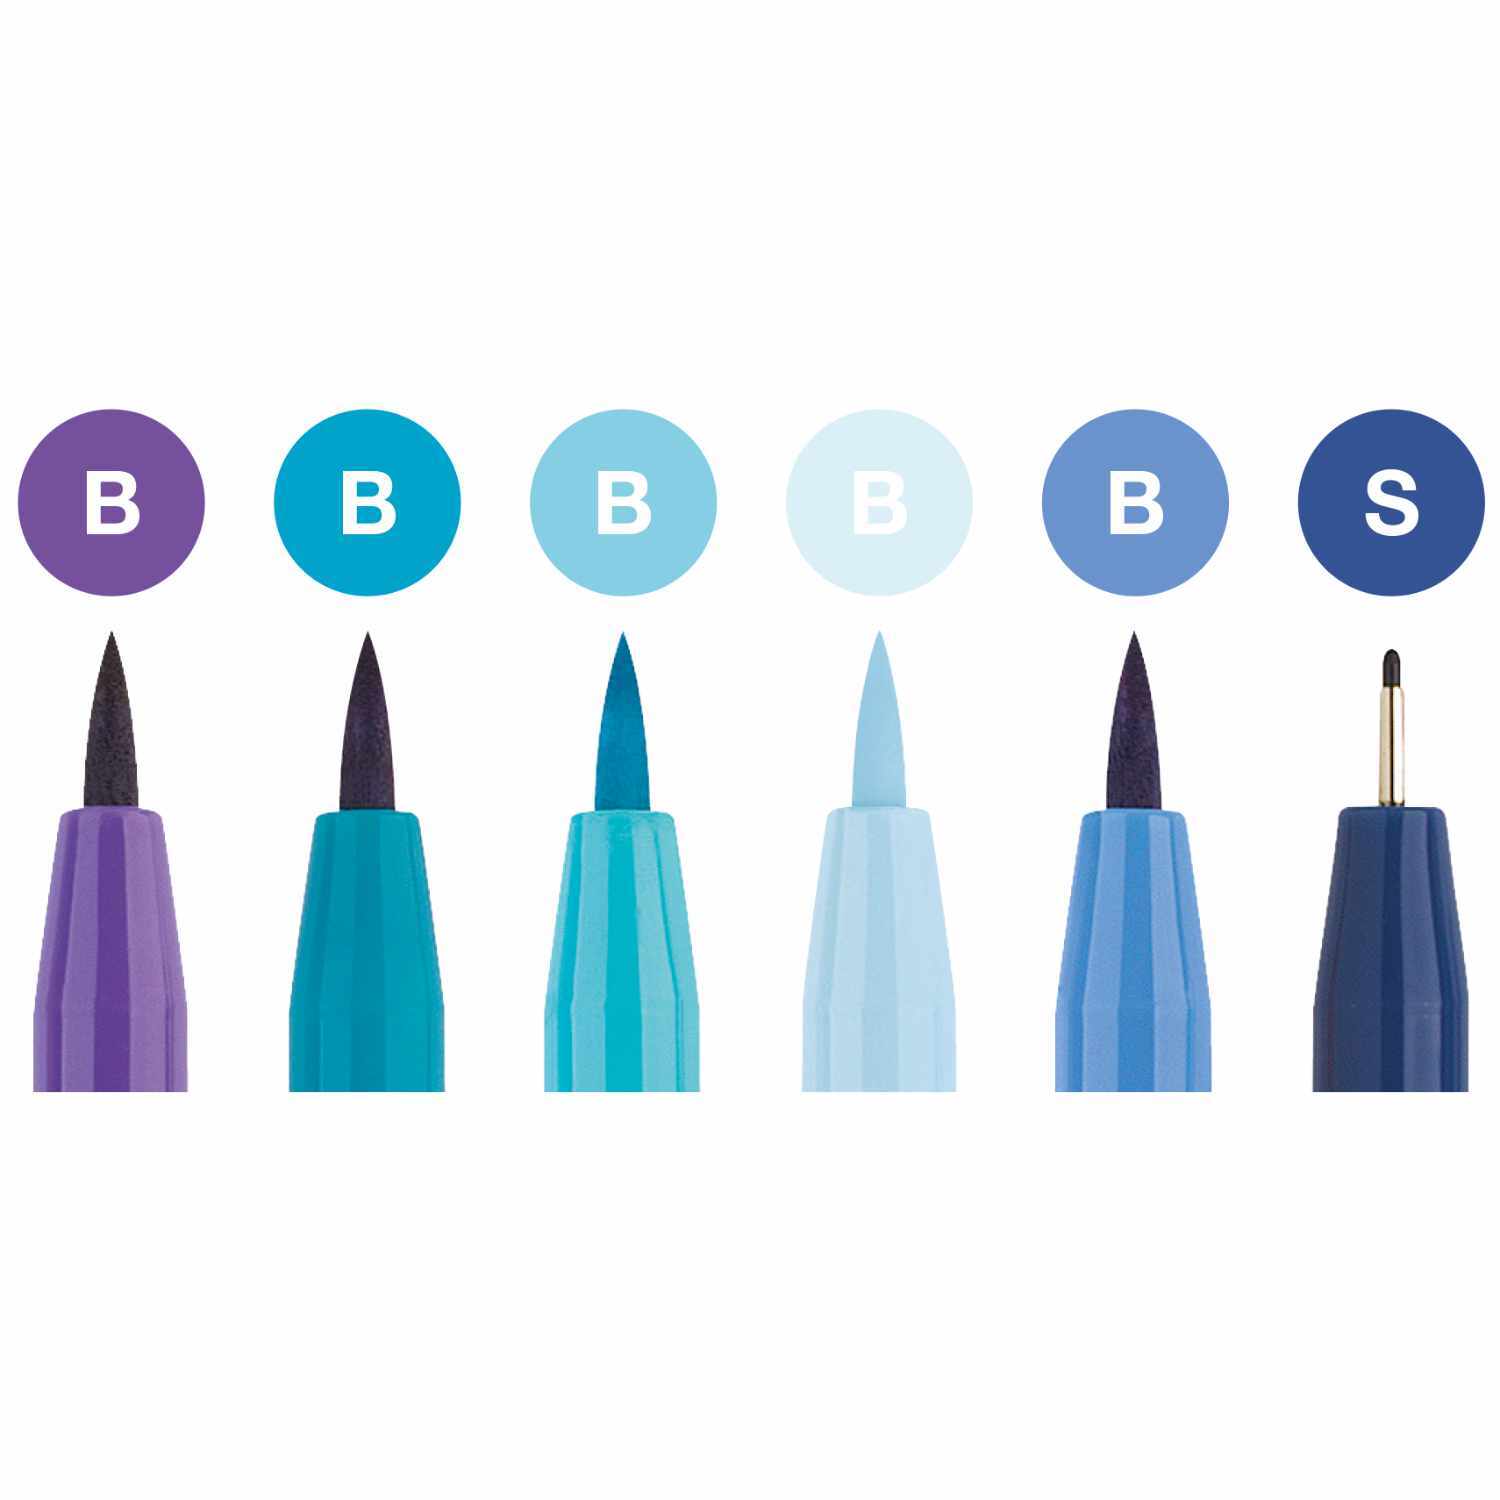 Tuschestift Pitt Artist Pen Handlettering Blautöne 6 Stück